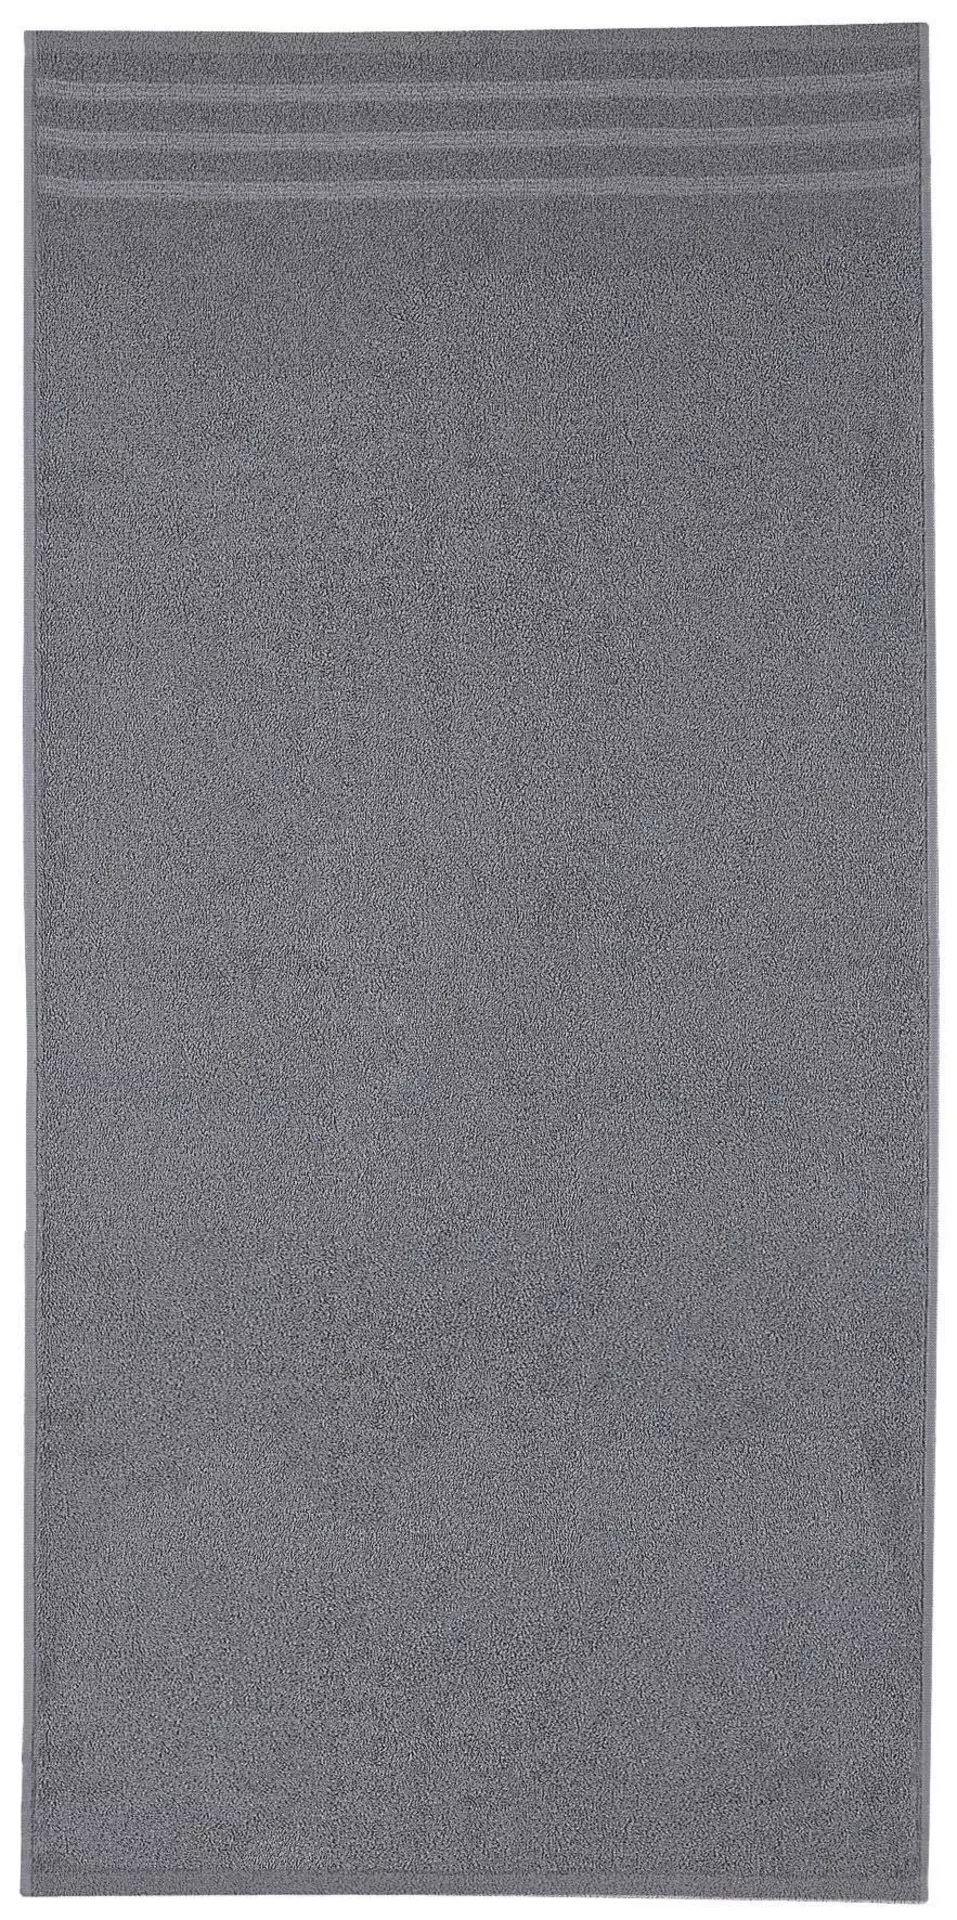 Handtuch Kleine Wolke grau | Möbel Inhofer | Handtuchstangen